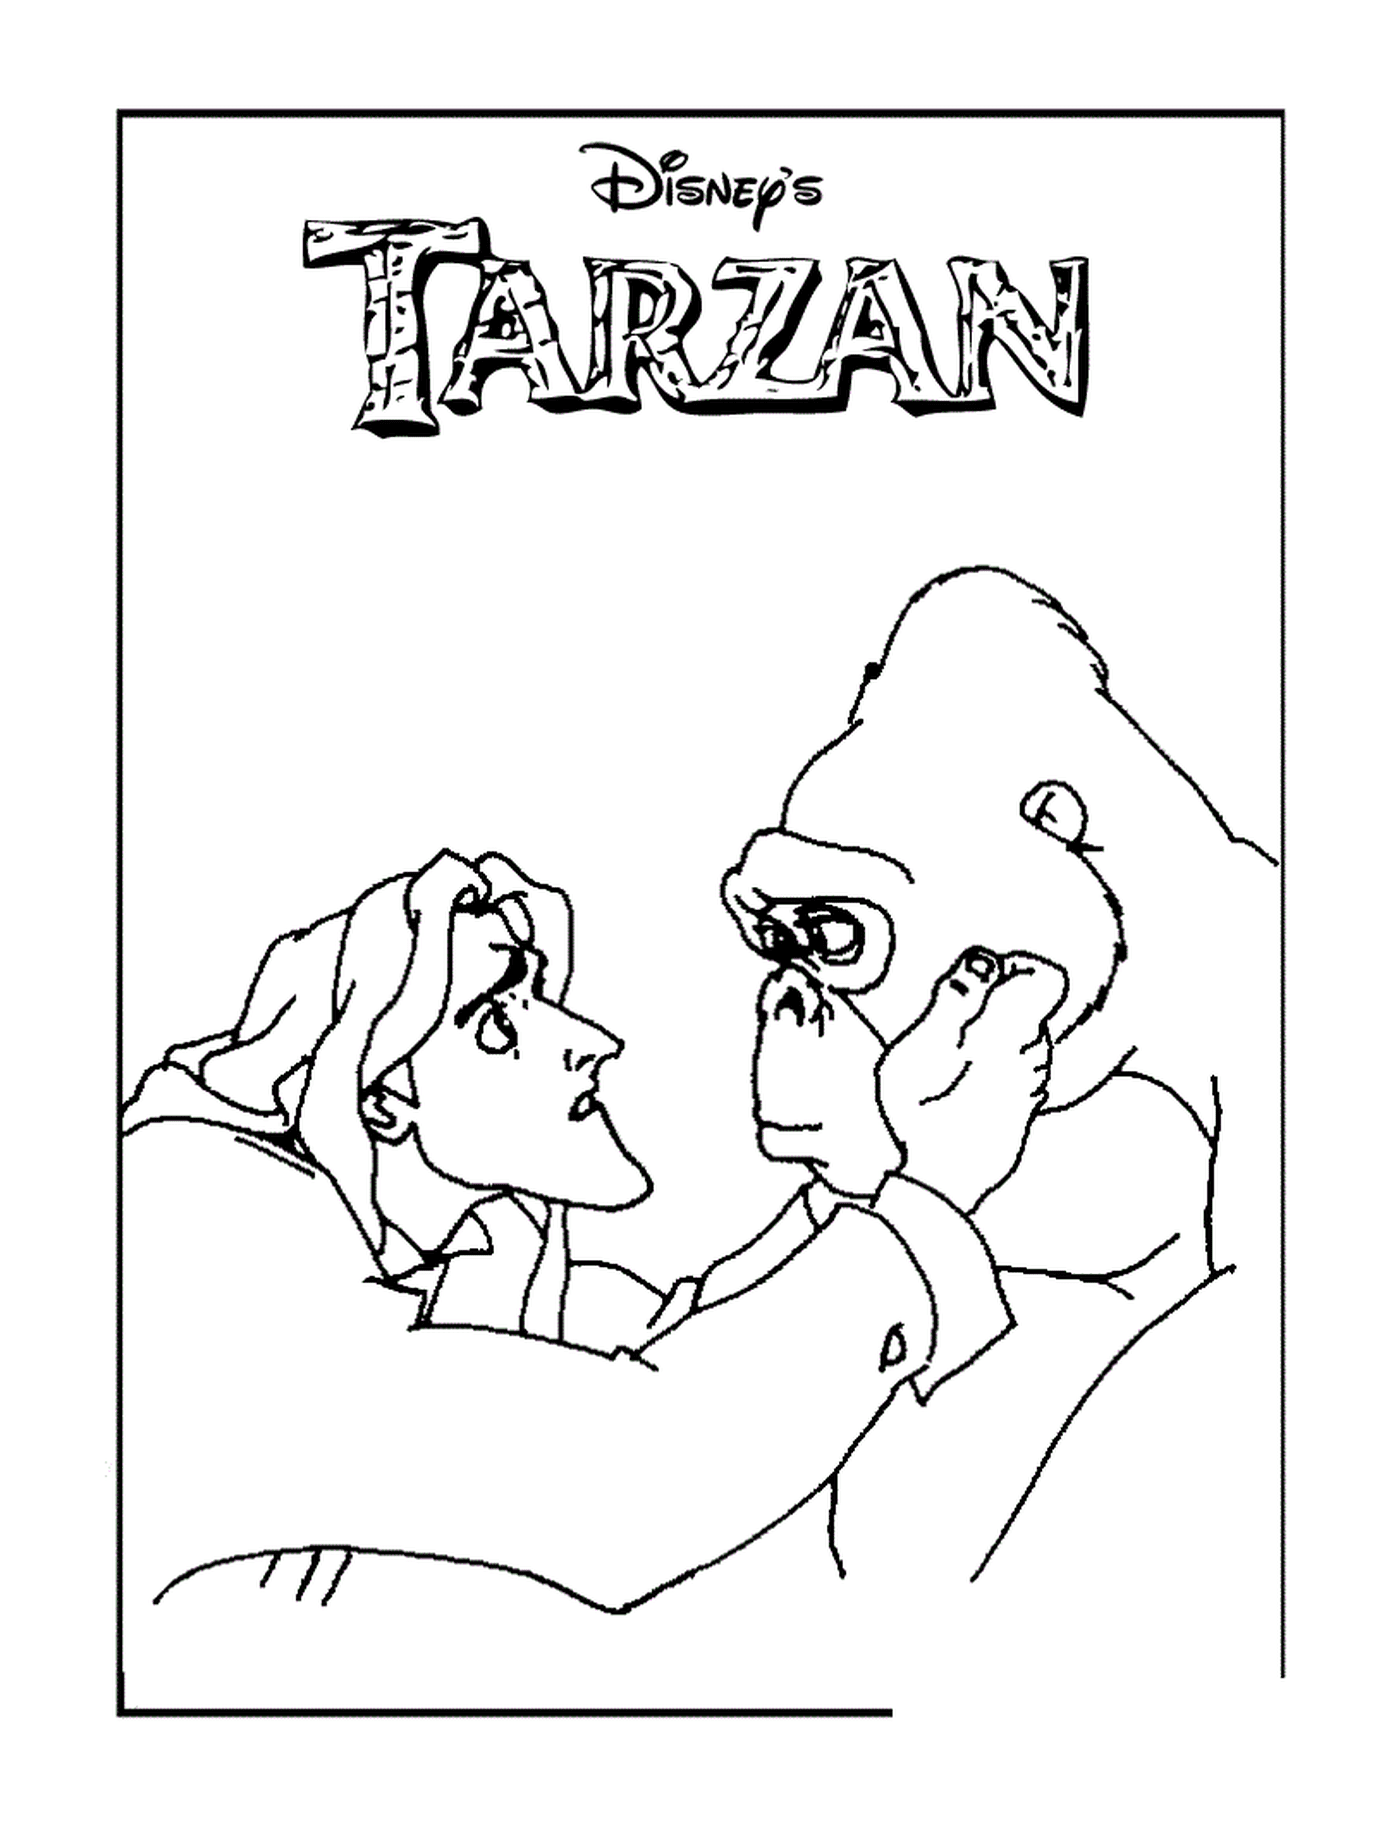  Tarzan und Gorilla 